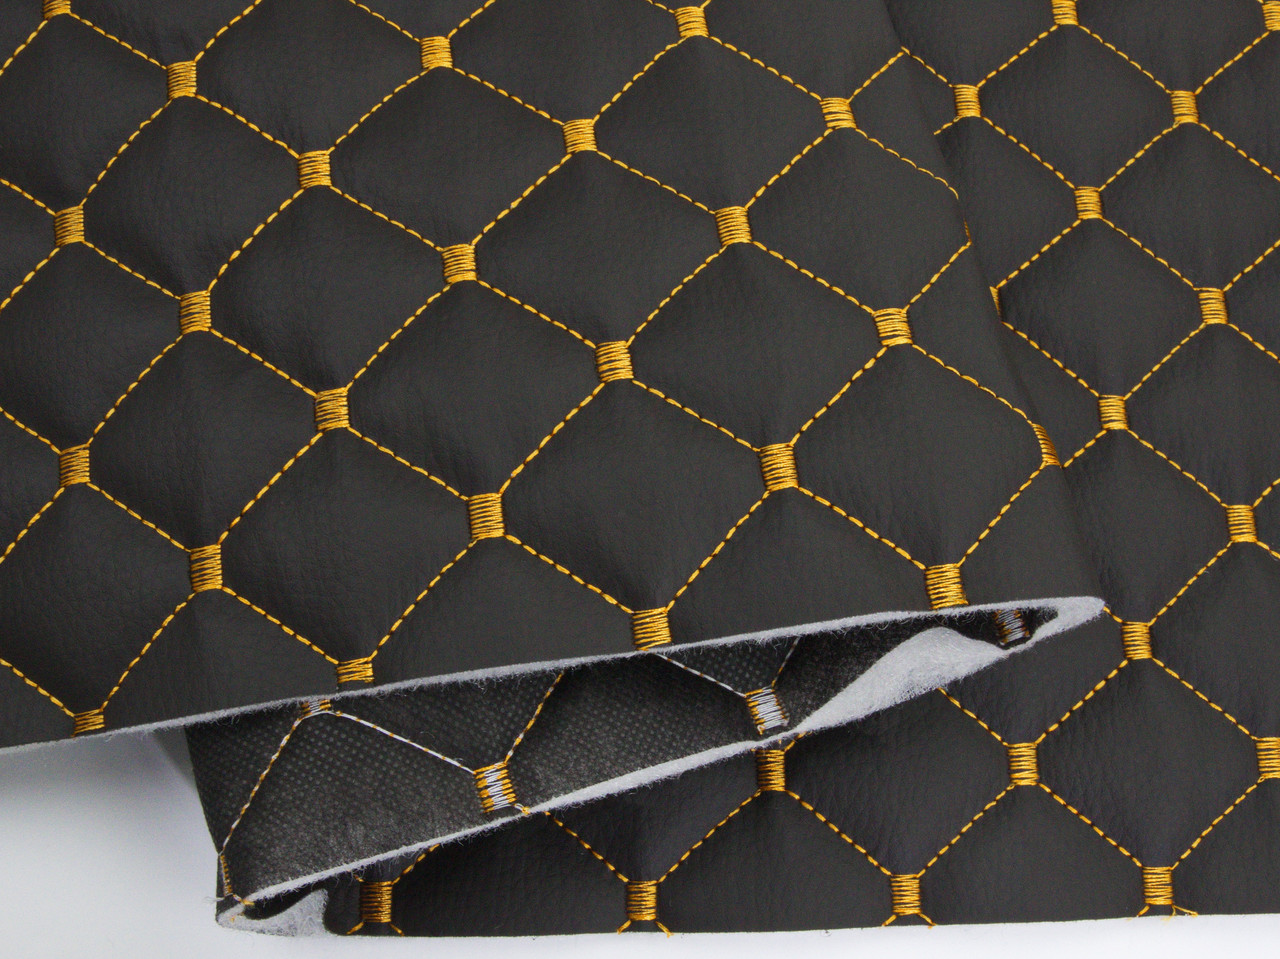 Кожзам стёганый чёрный «Ромб» (прошитый тёмно-золотой нитью) дублированный синтепоном и флизелином, ширина 1,35м детальная фотка